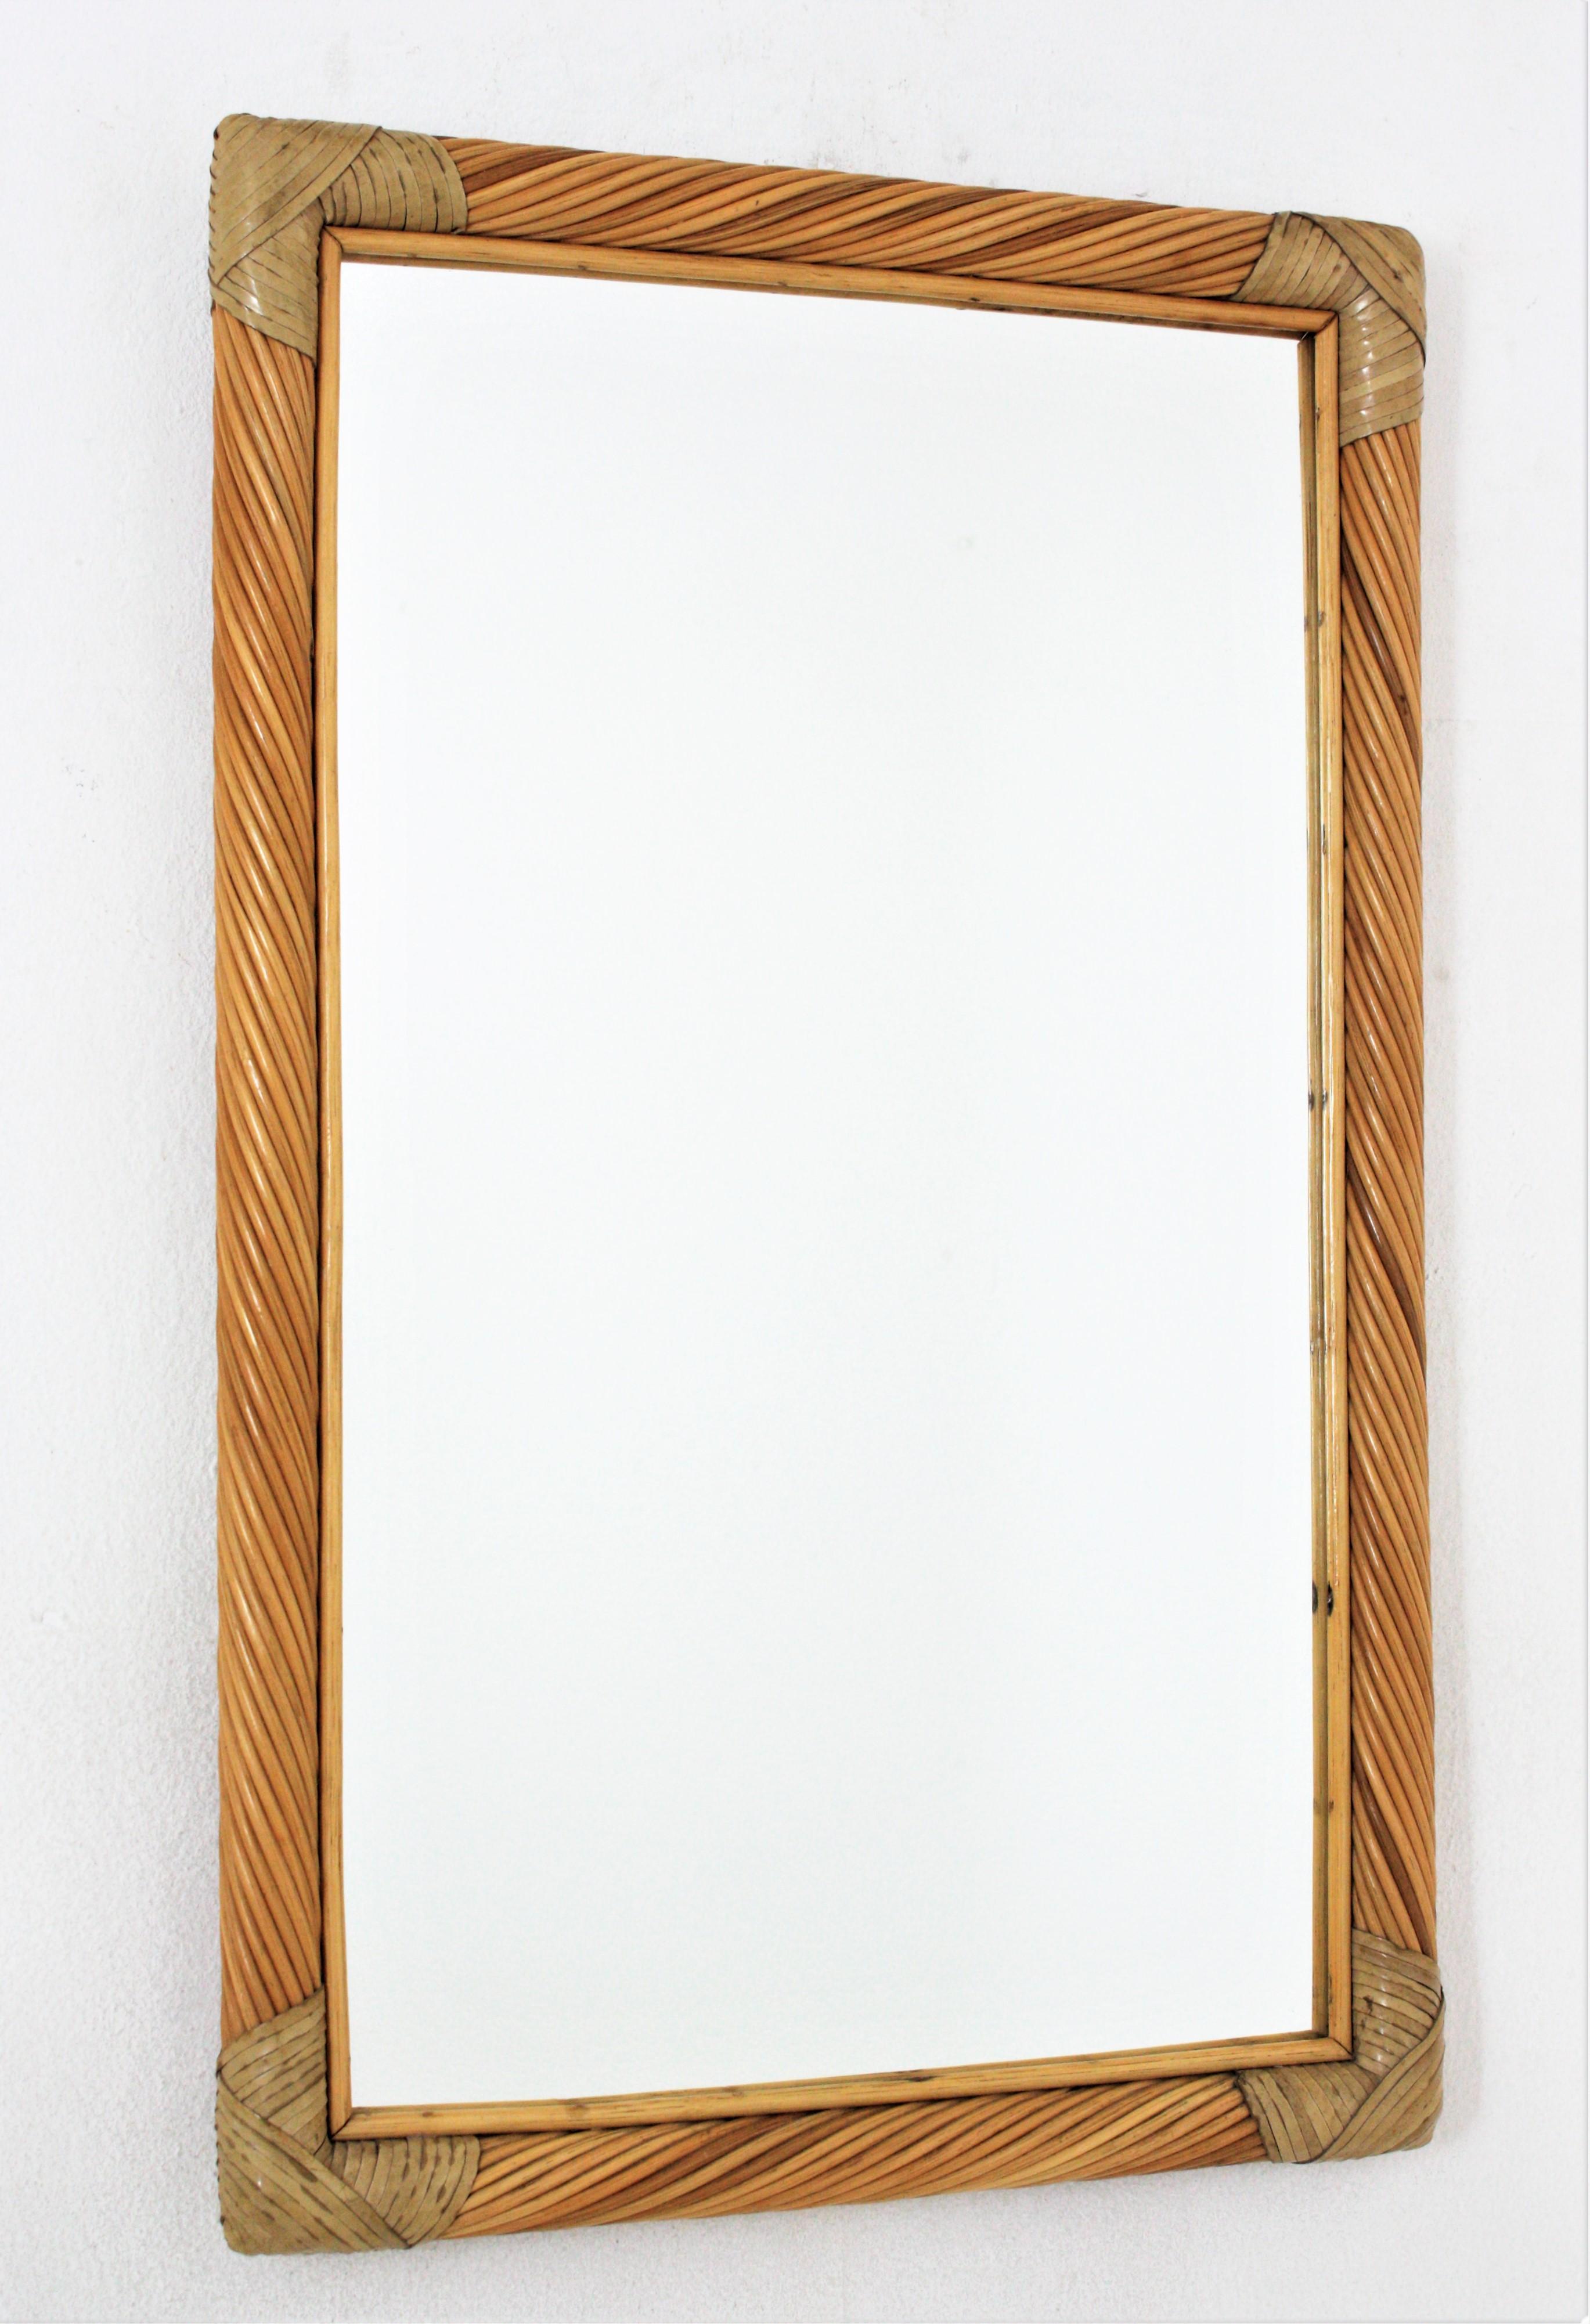 Miroir mural rectangulaire, roseau, rotin, cuir, Italie, années 1960.
Miroir en rotin qui attire le regard. Le cadre est bien construit avec des cannes de rotin en roseau torsadé. Les coins sont ornés d'une bande de cuir.
A utiliser comme miroir